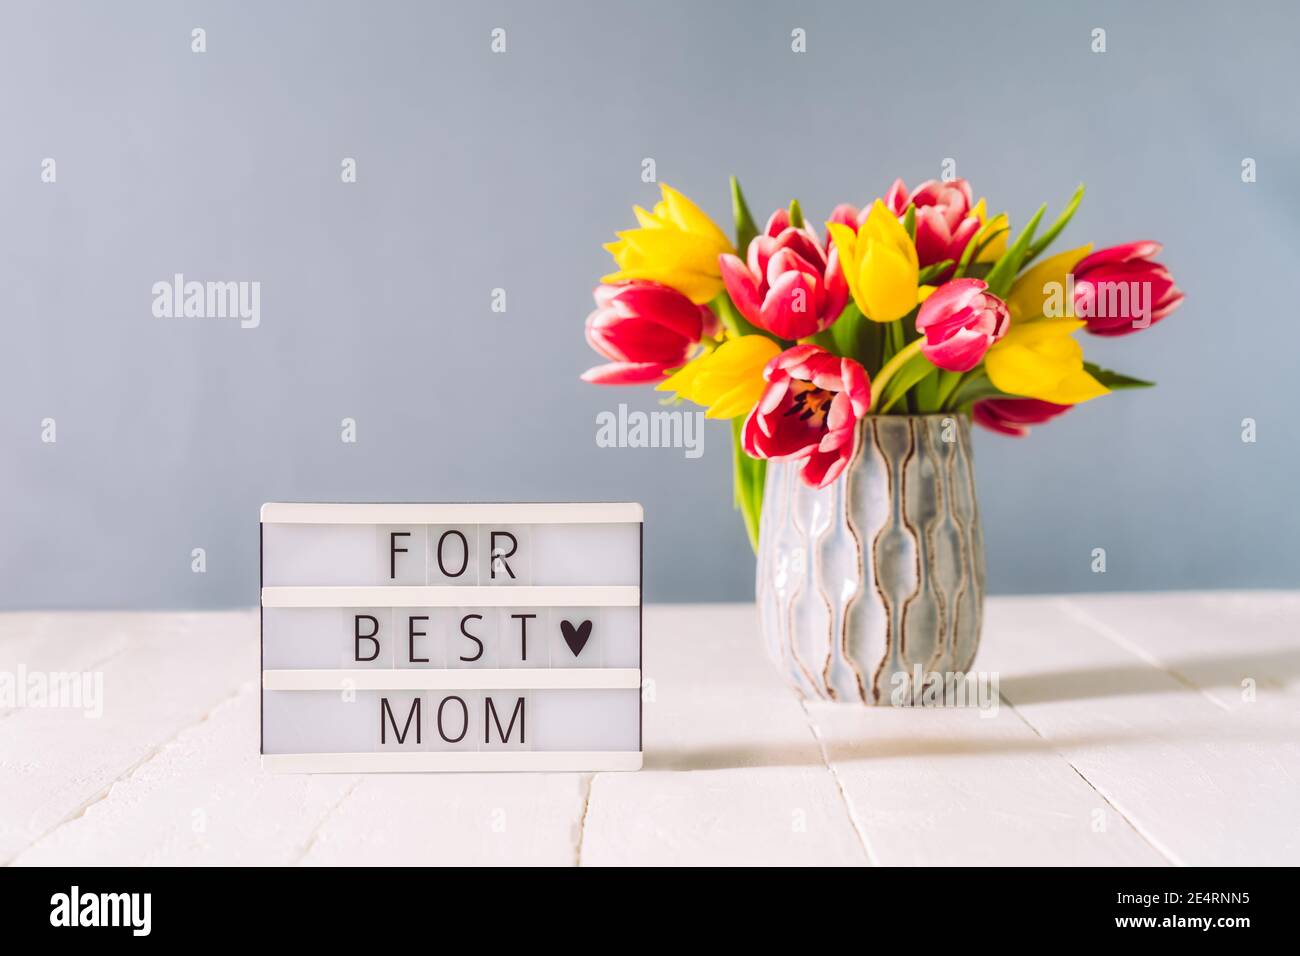 Scatola luminosa con per il miglior messaggio di mamma e bouquet di fiori di tulipano rosa e giallo in vaso su tavolo di legno bianco e sfondo grigio chiaro. Saluto festivo Foto Stock